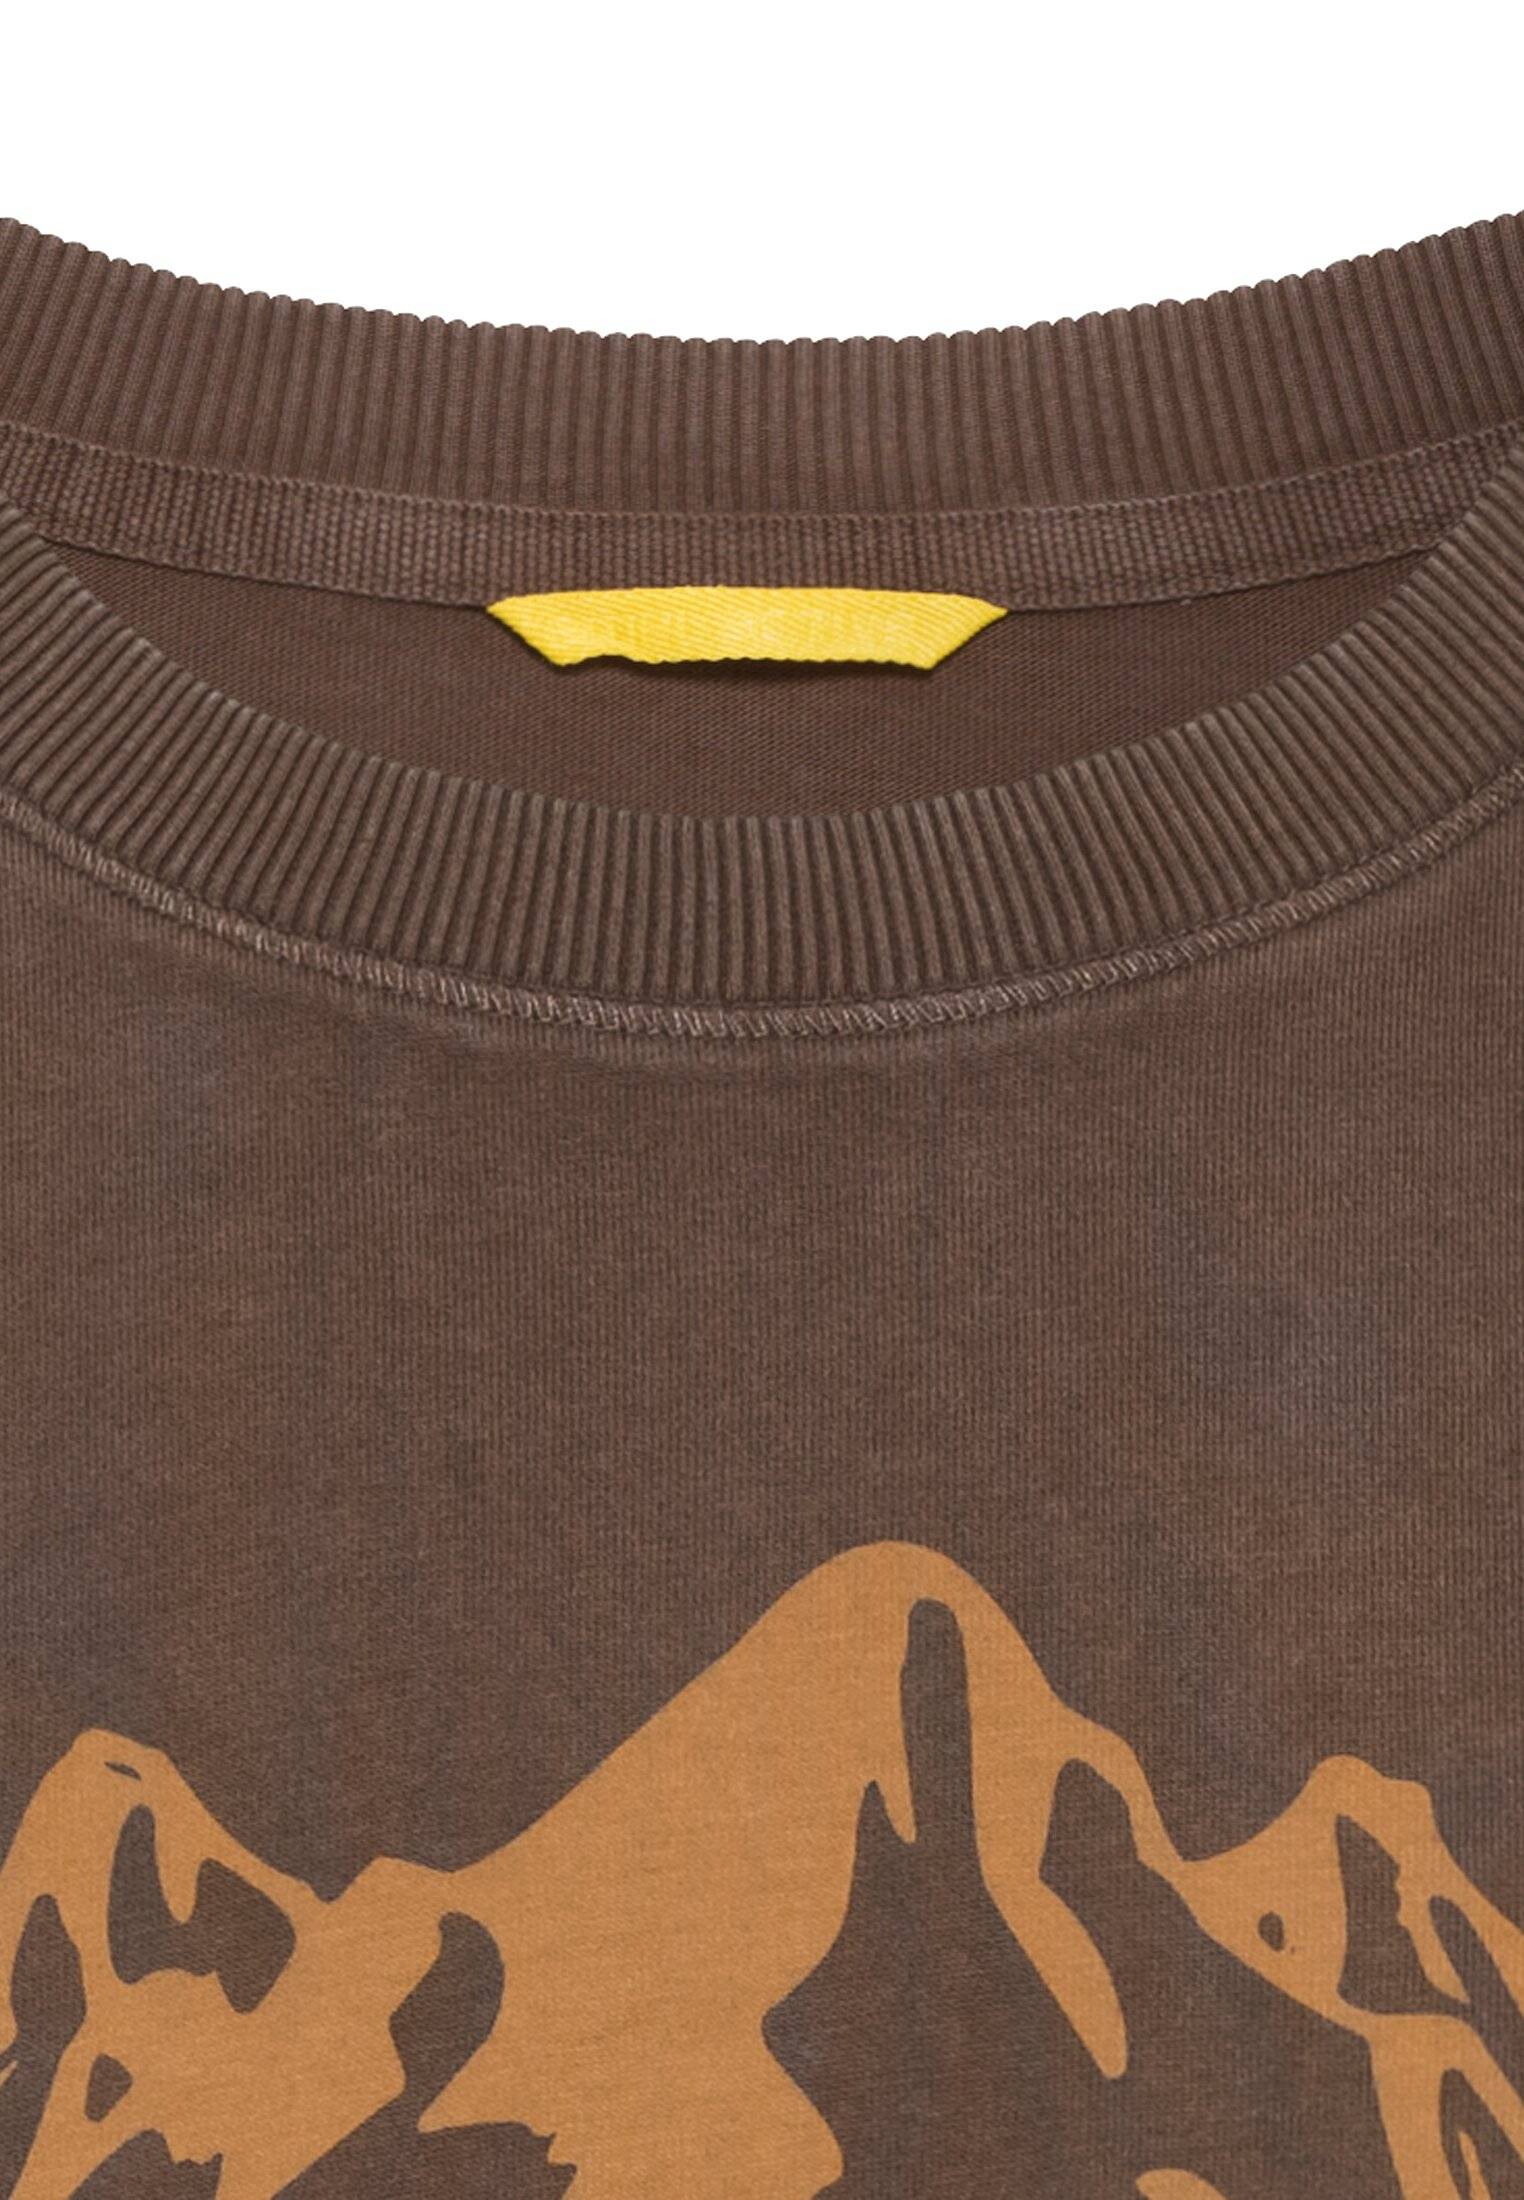 Мужская футболка Camel Active, коричневая, цвет коричневый, размер 56 - фото 3